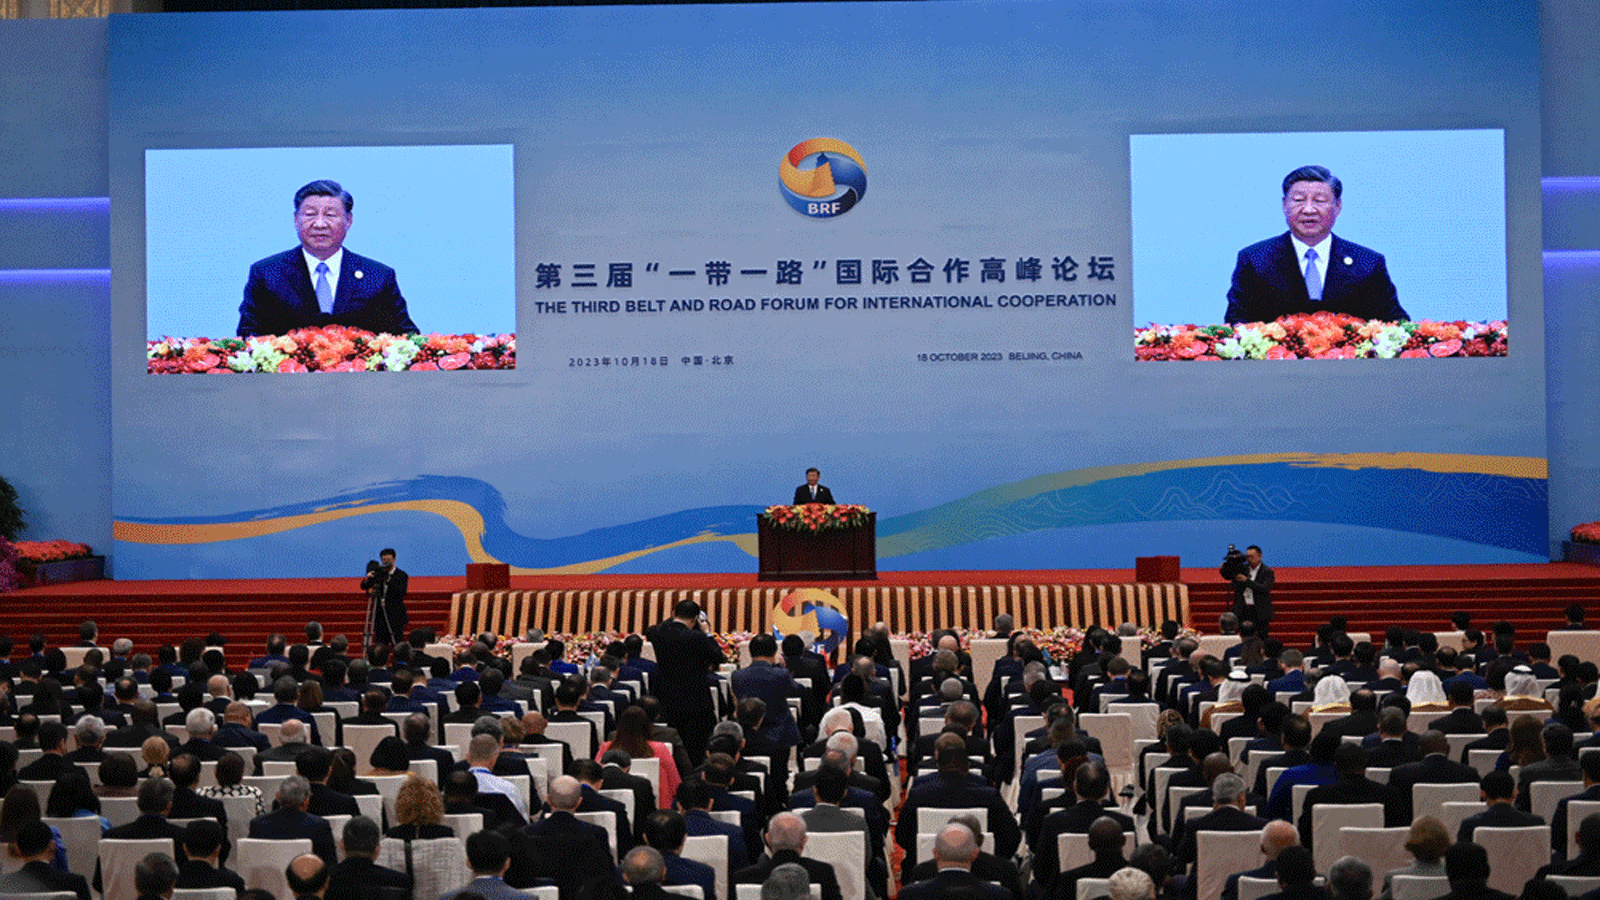 الرئيس الصيني شي جينبينغ يُلقي كلمة خلال حفل افتتاح منتدى الحزام والطريق الثالث للتعاون الدولي في قاعة الشعب الكبرى في بكين. 18 تشرين الأول/أكتوبر 2023